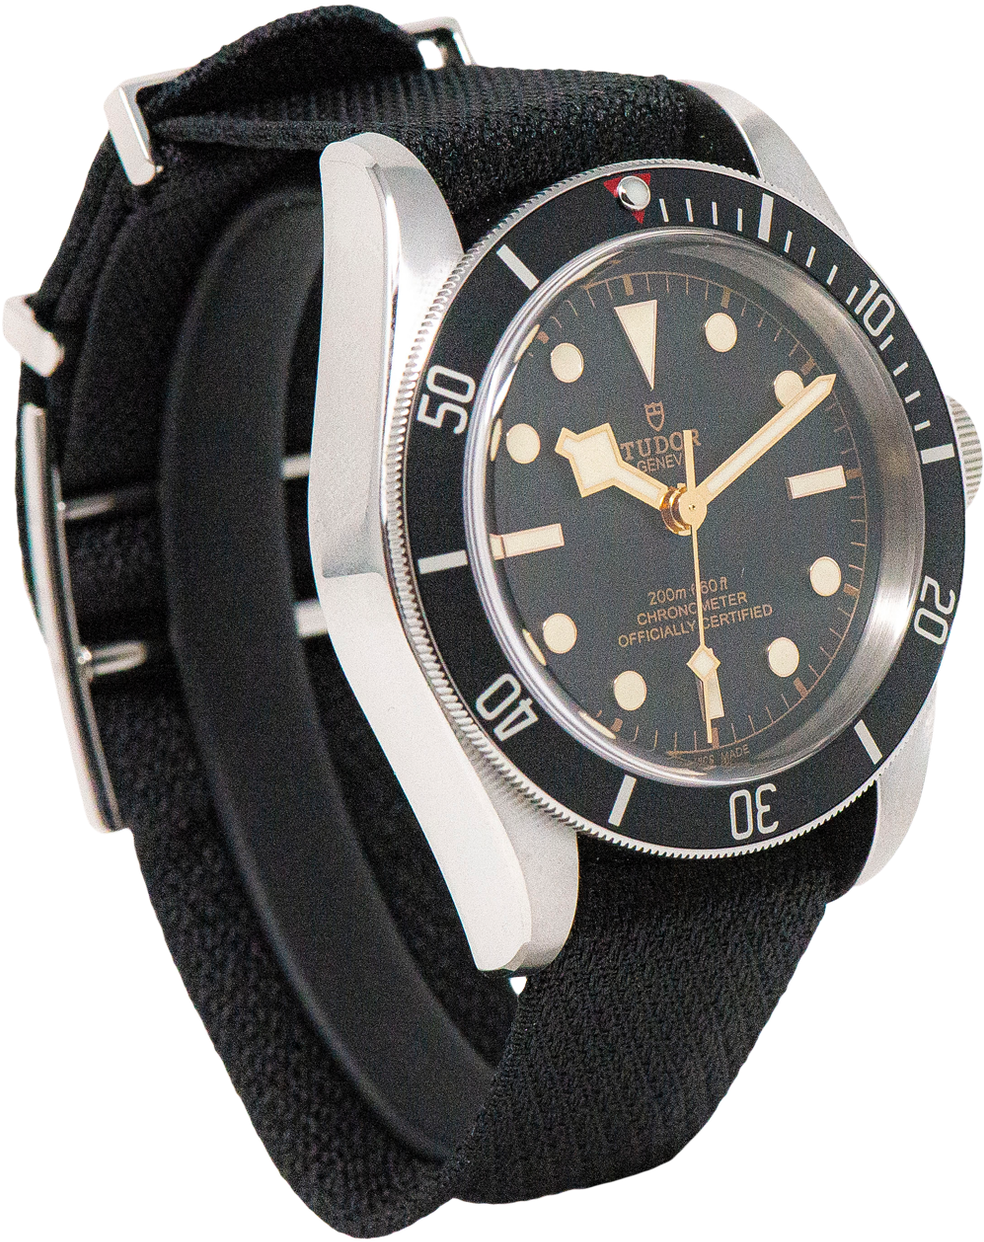 Vintage Diver Watch Black Background PNG